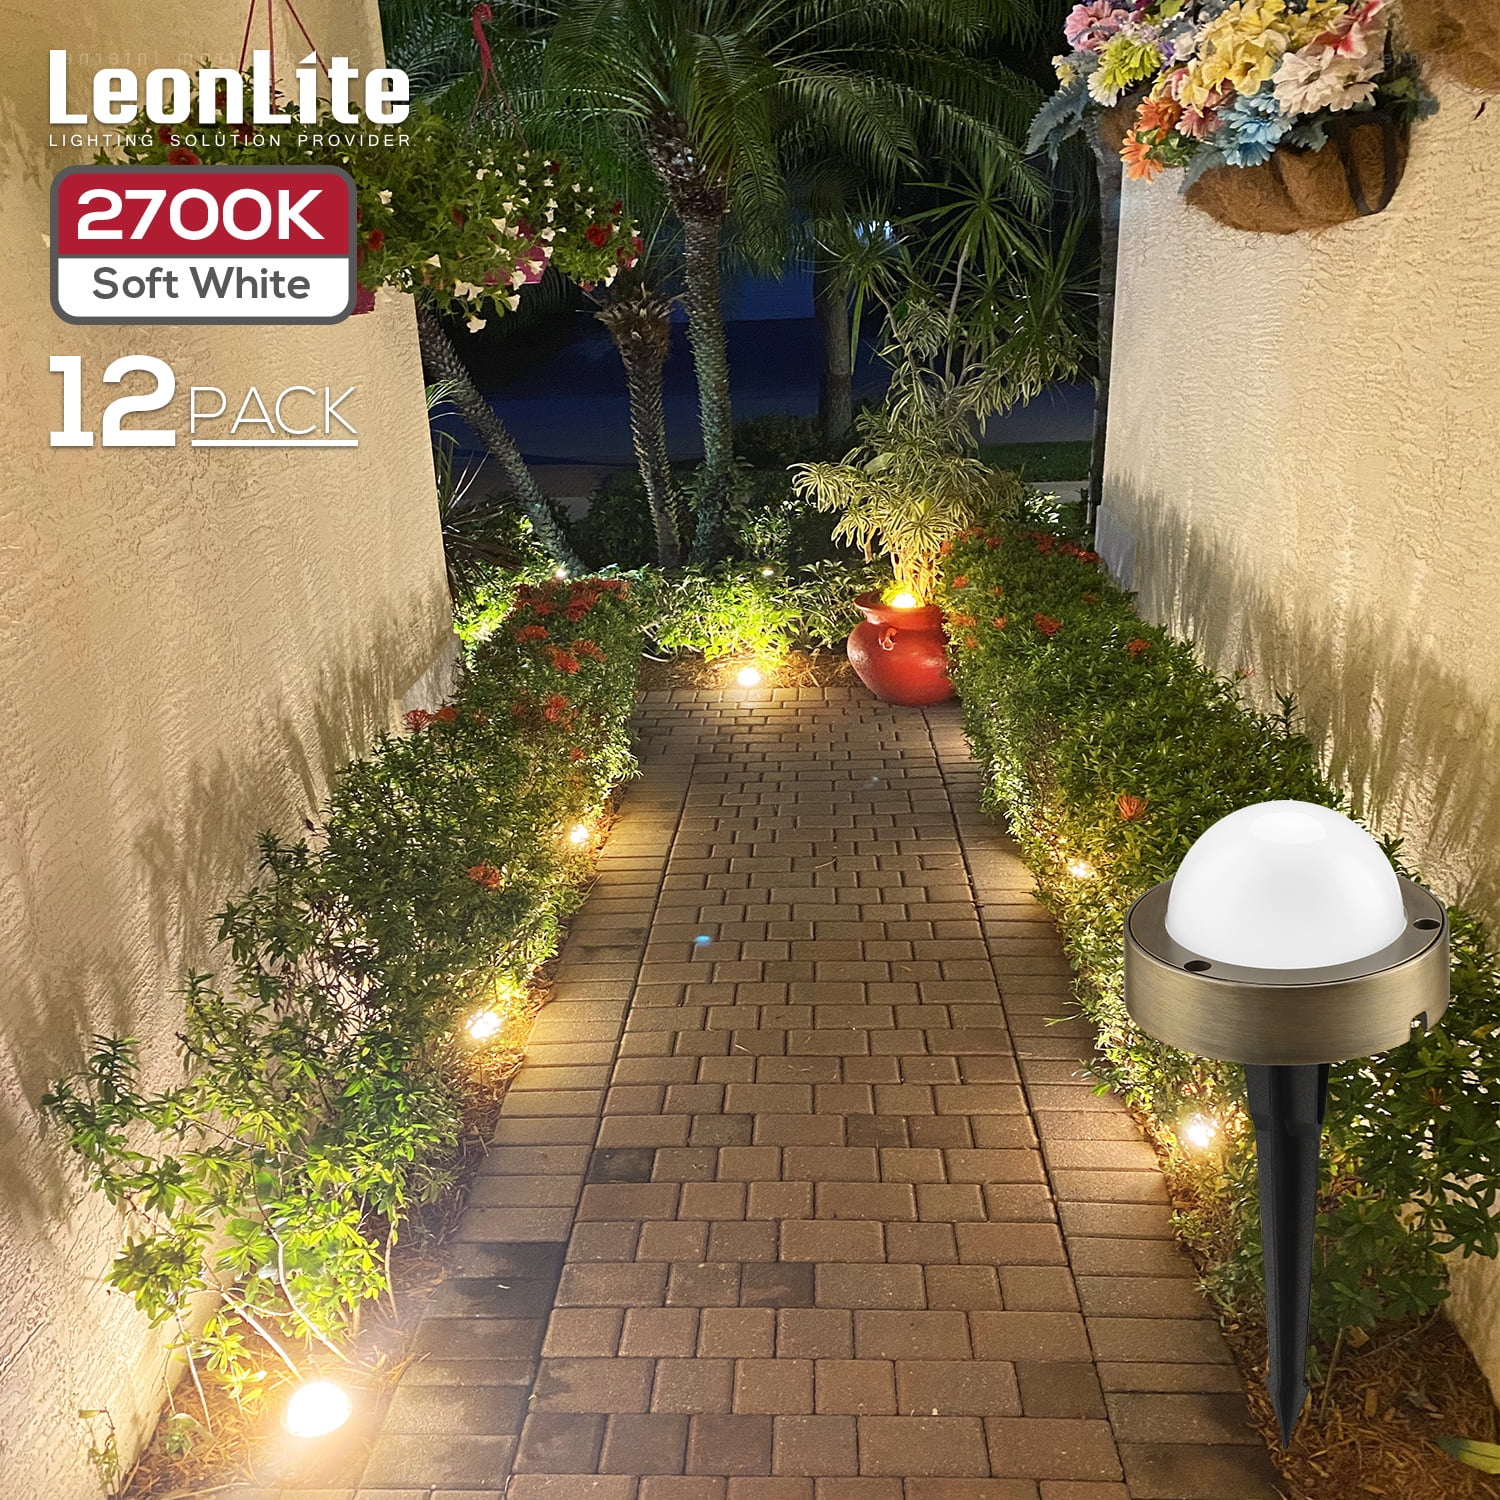 LEONLITE 12 Pack Low Voltage LED Landscape Lighting, 12V-24V LED